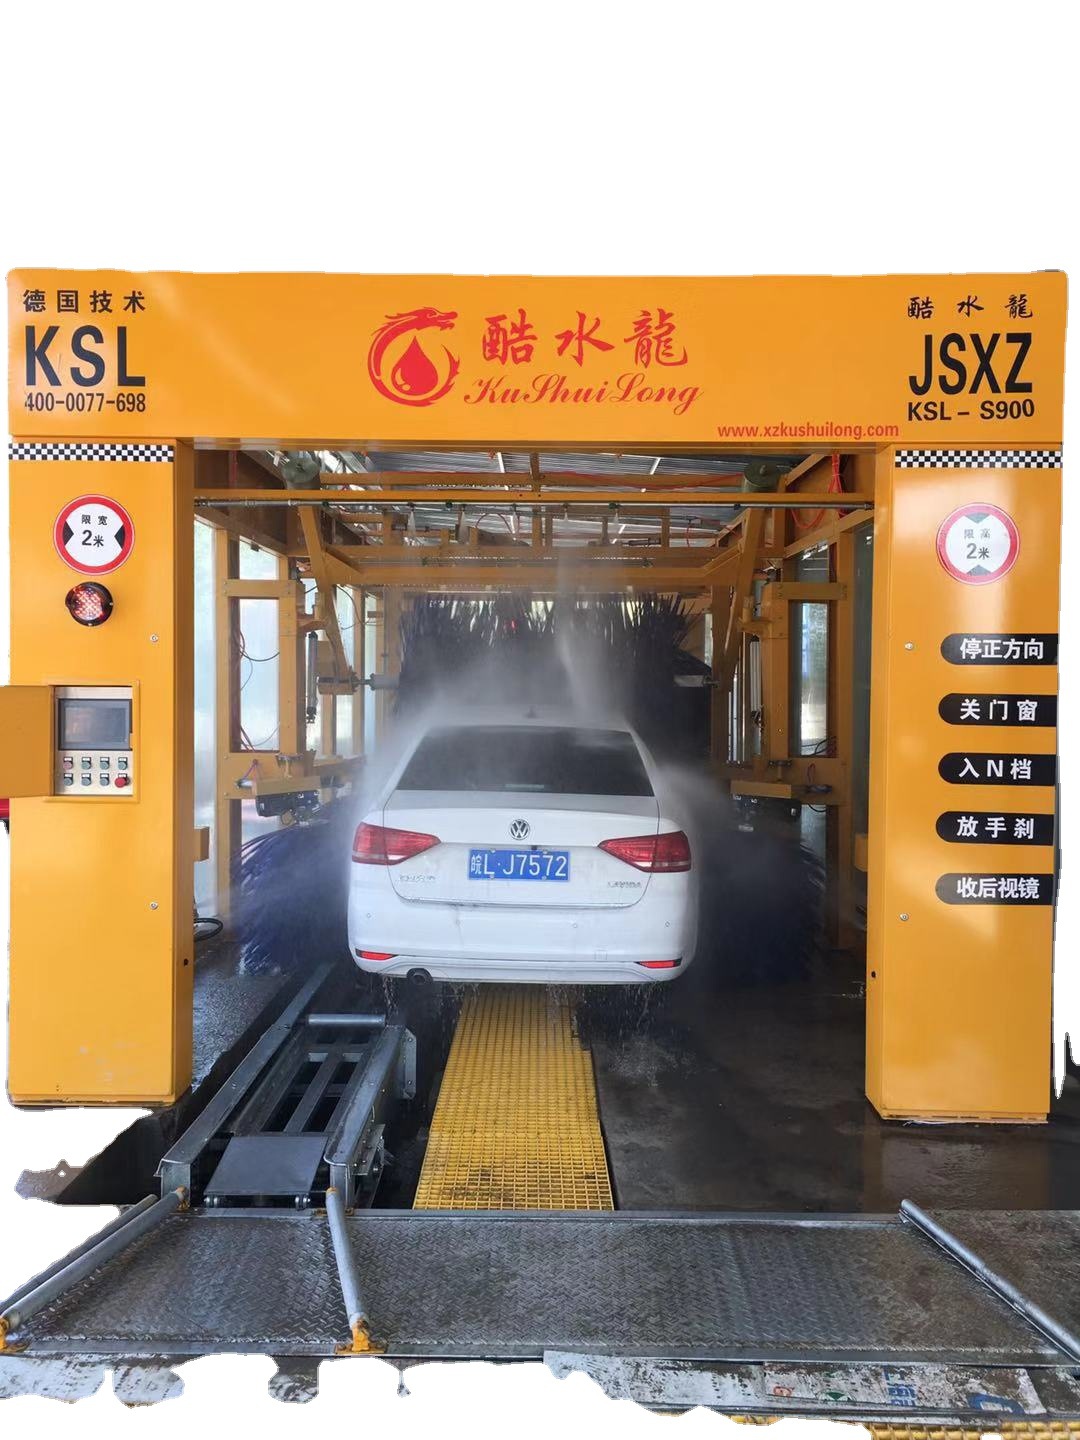 徐州酷水龙全自动洗车机9刷隧道商用电脑洗车机厂家